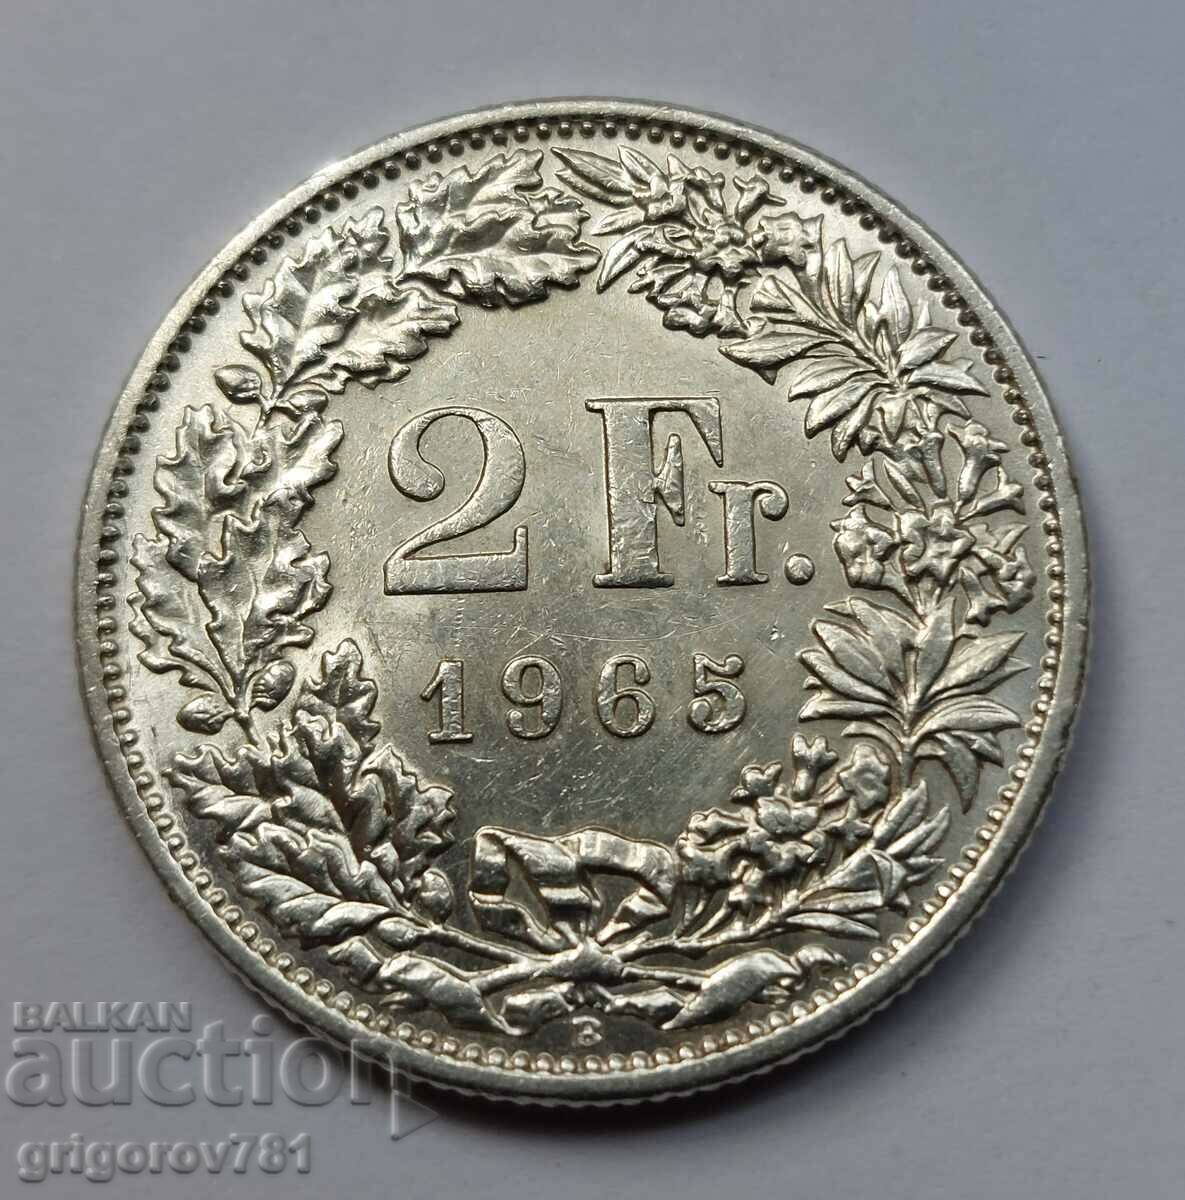 2 Franci Argint Elveția 1965 B - Monedă de argint #20